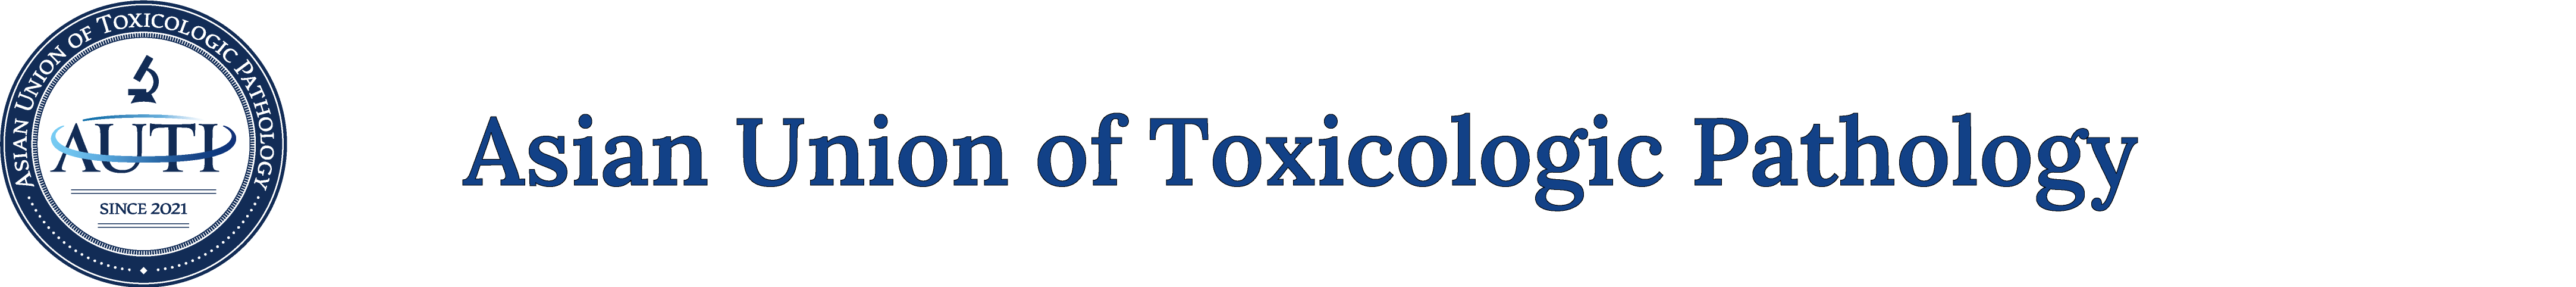 Asian Union of Toxicologic Pathology